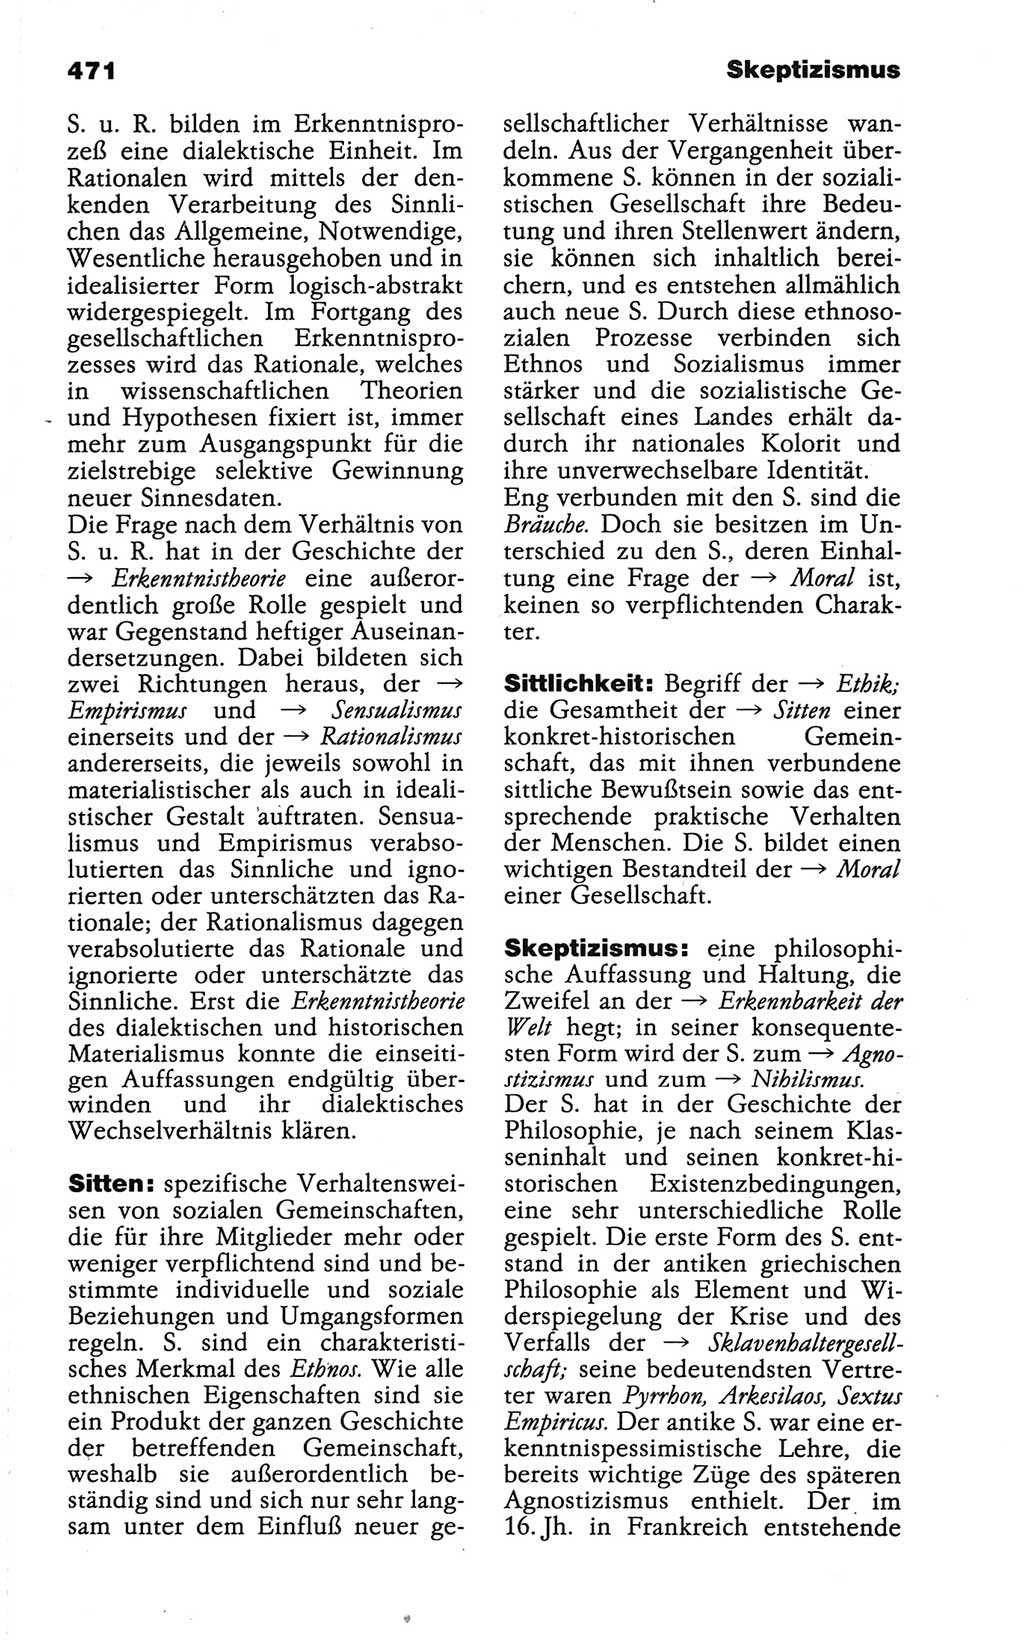 Wörterbuch der marxistisch-leninistischen Philosophie [Deutsche Demokratische Republik (DDR)] 1986, Seite 471 (Wb. ML Phil. DDR 1986, S. 471)